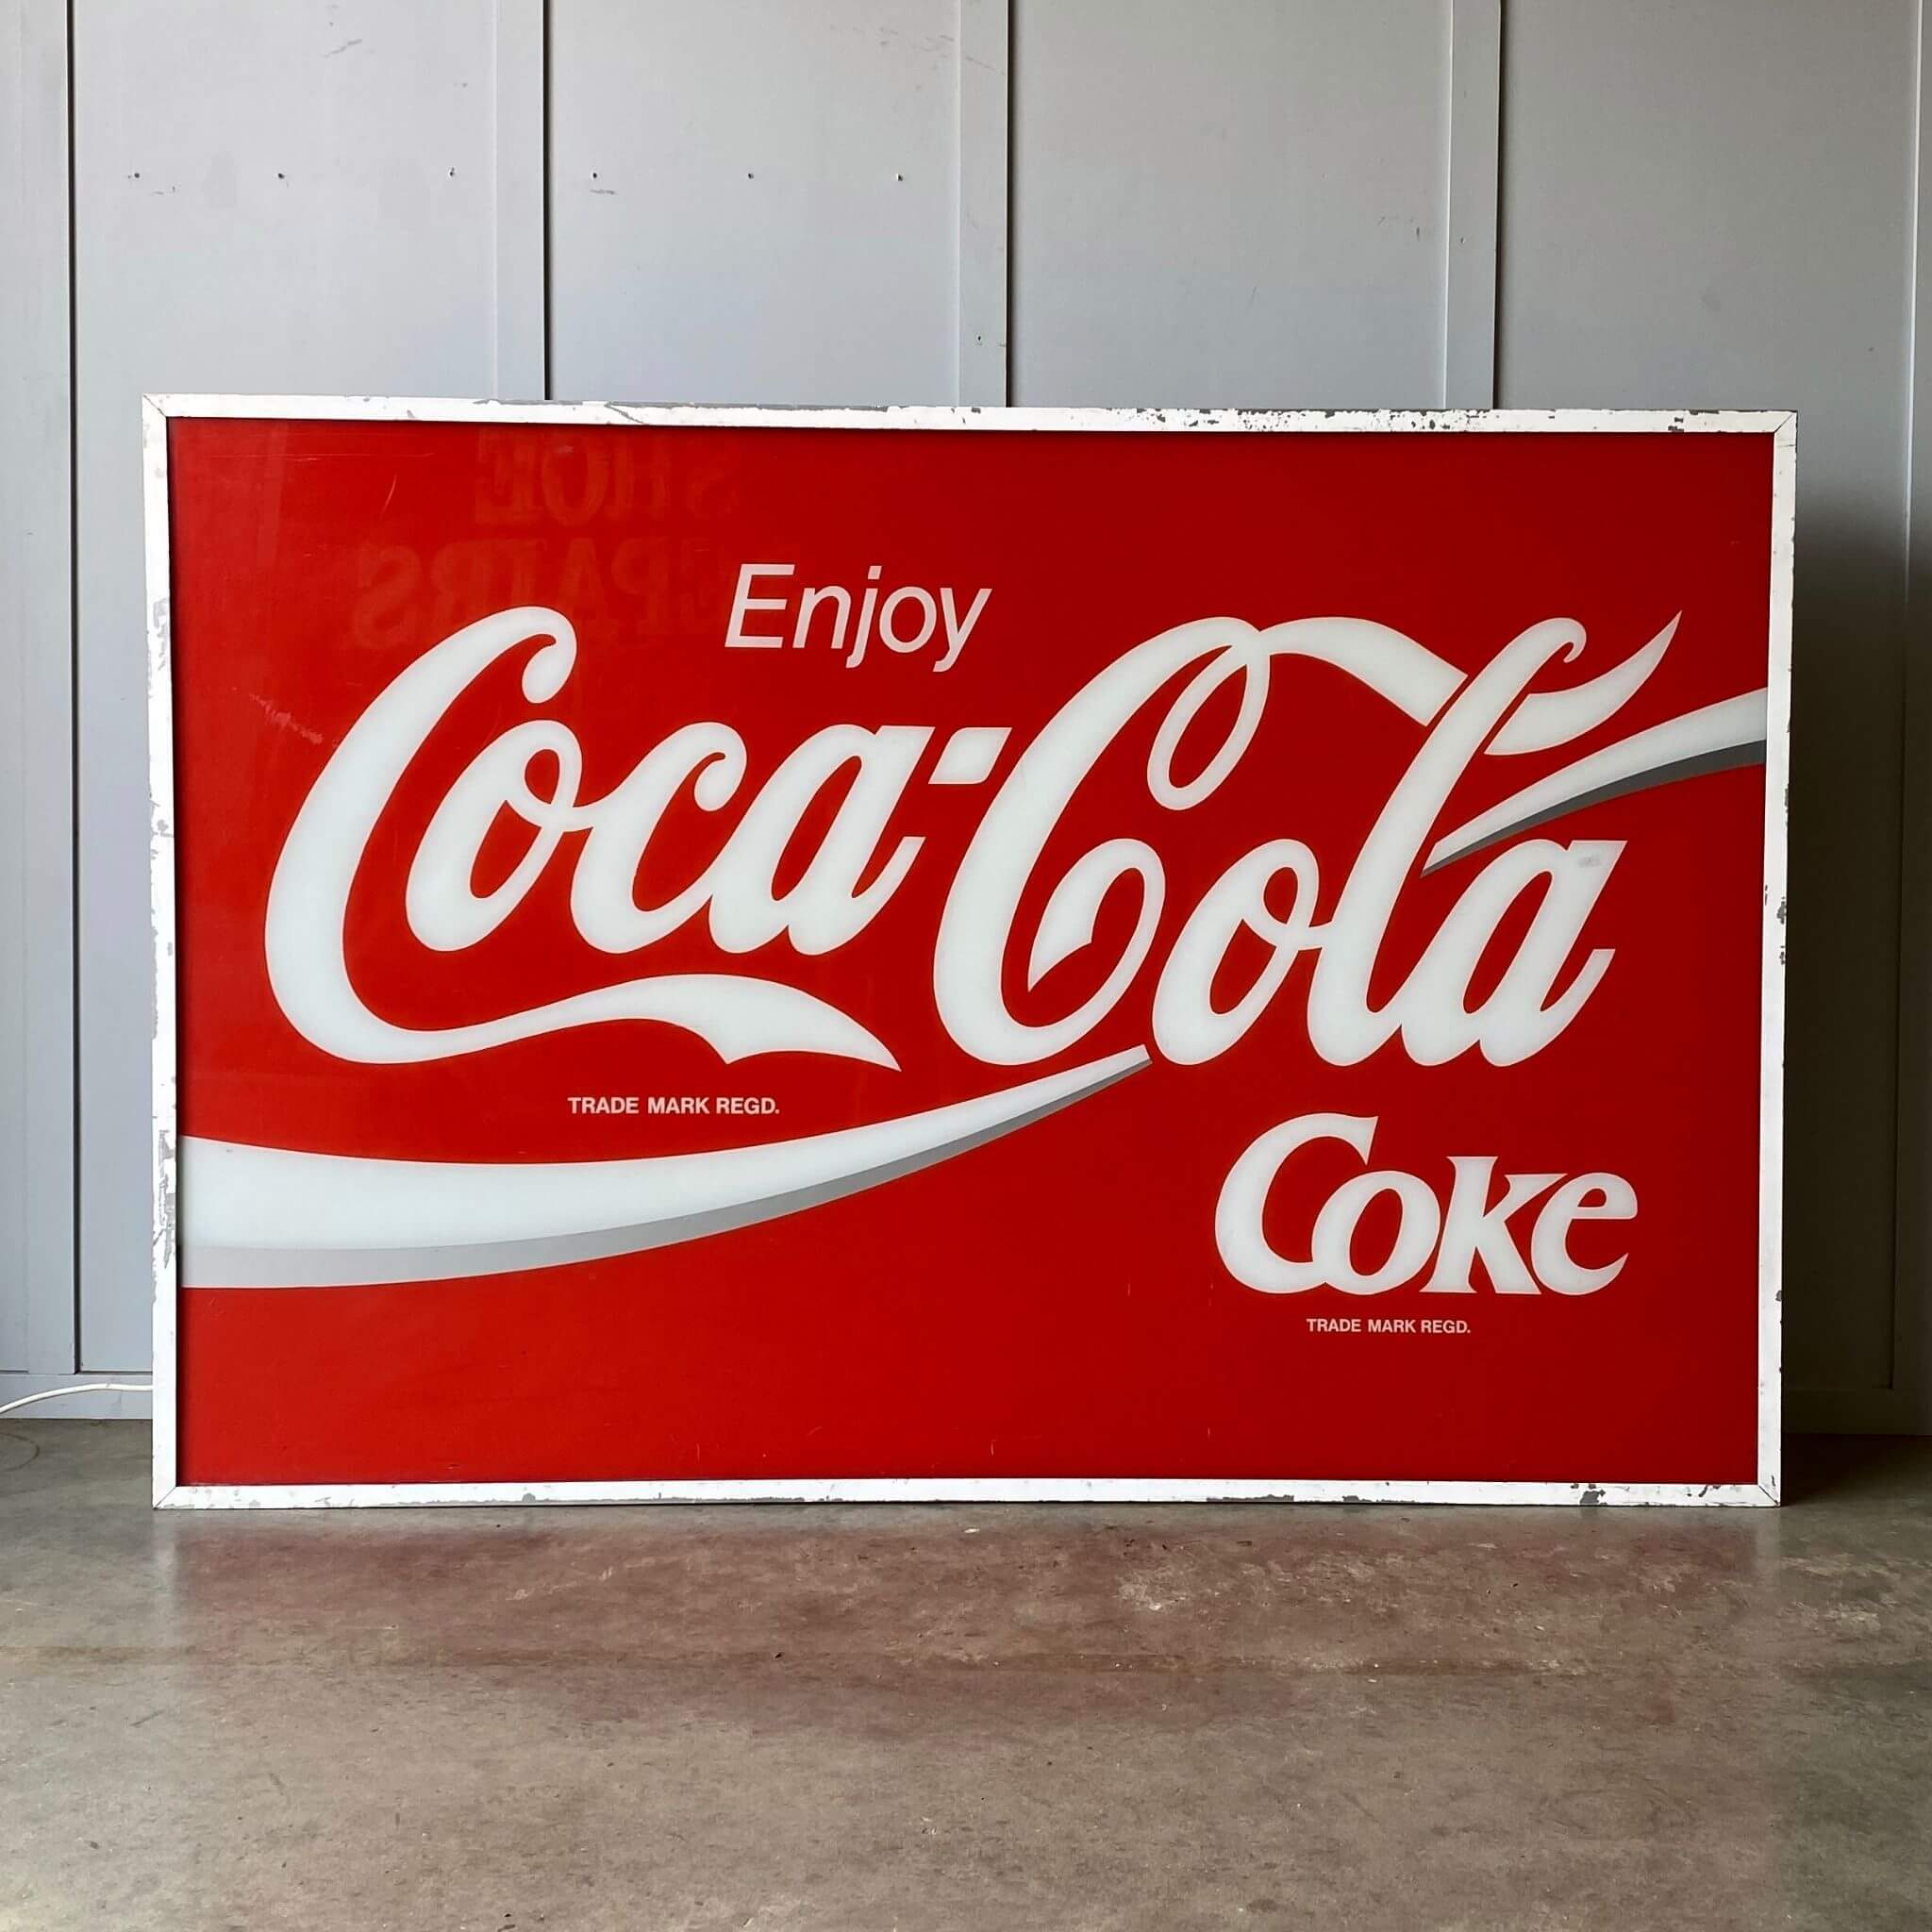 A Coca cola lightbox sign